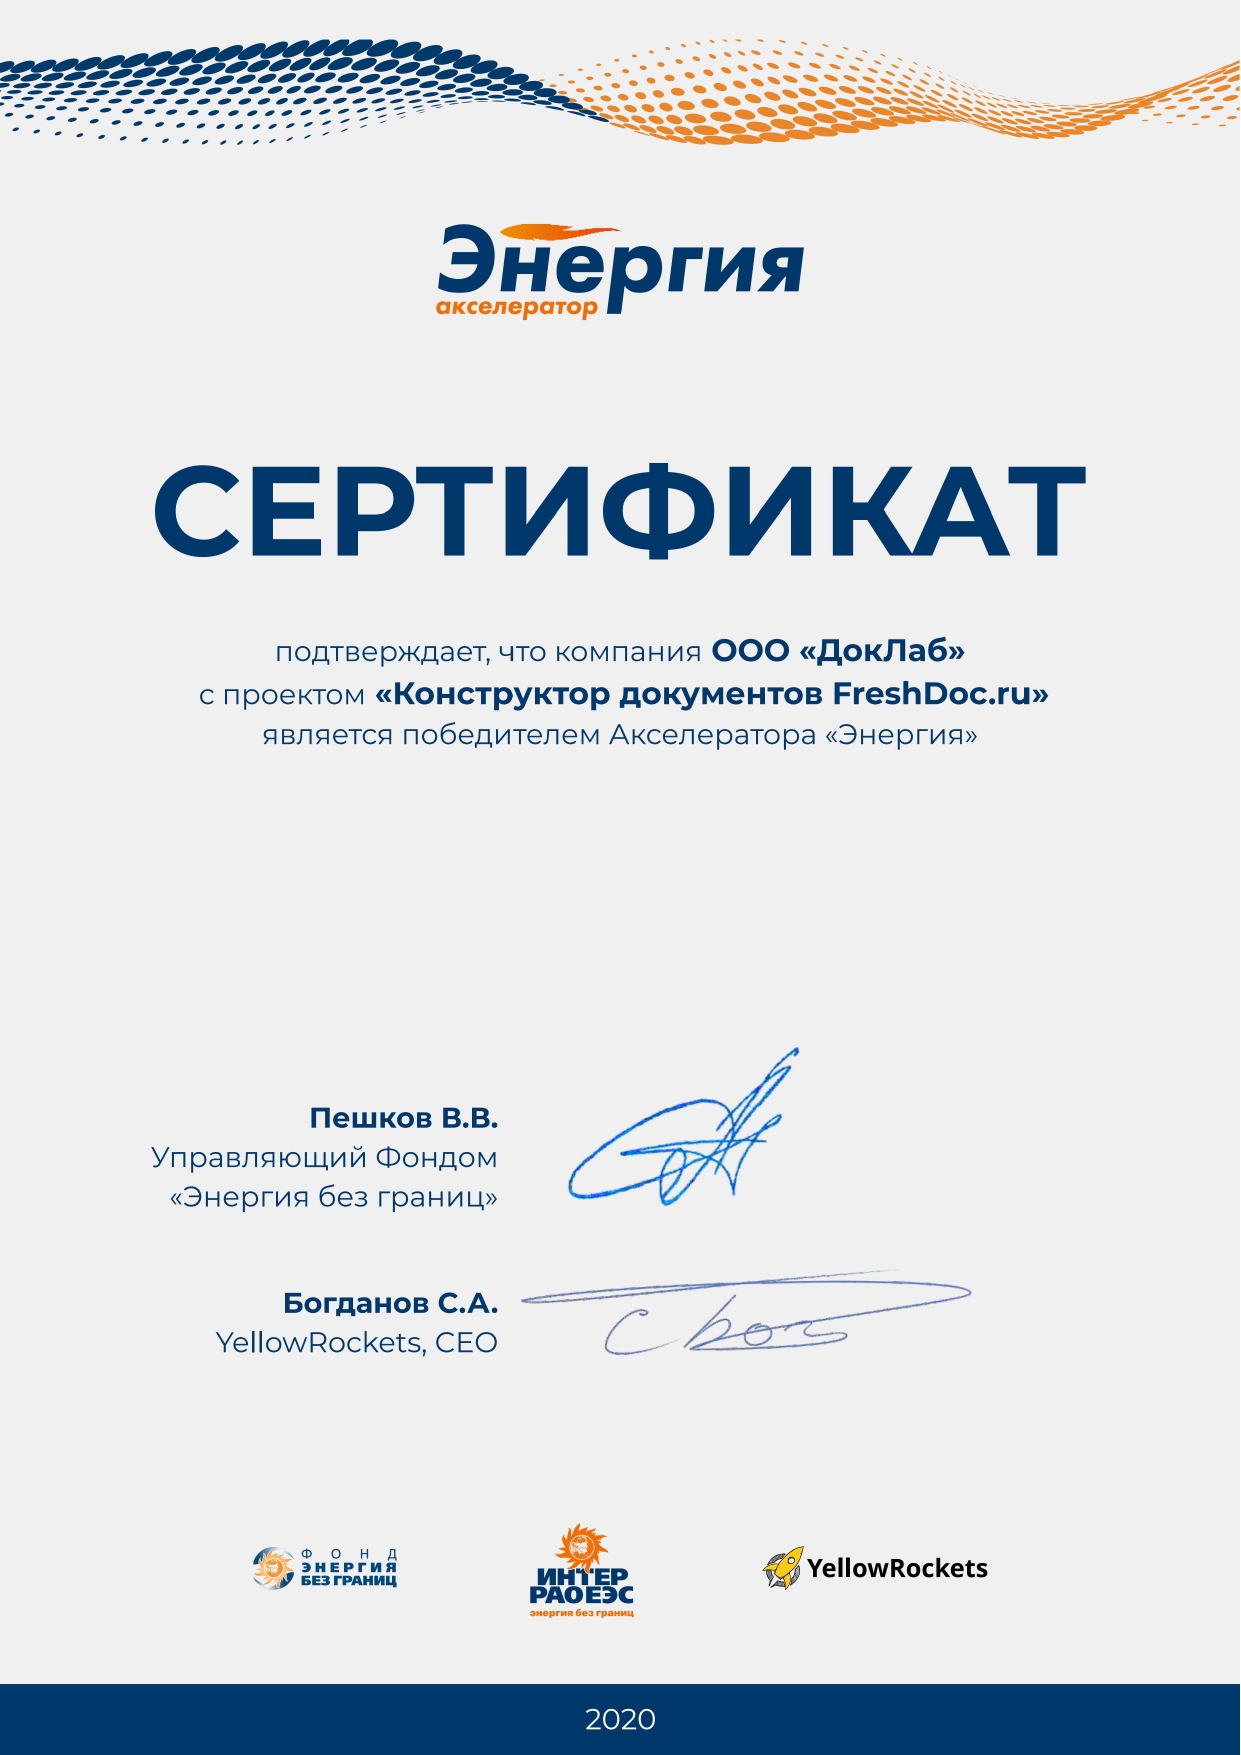 Сертификат победителя «Акселератор энергия»